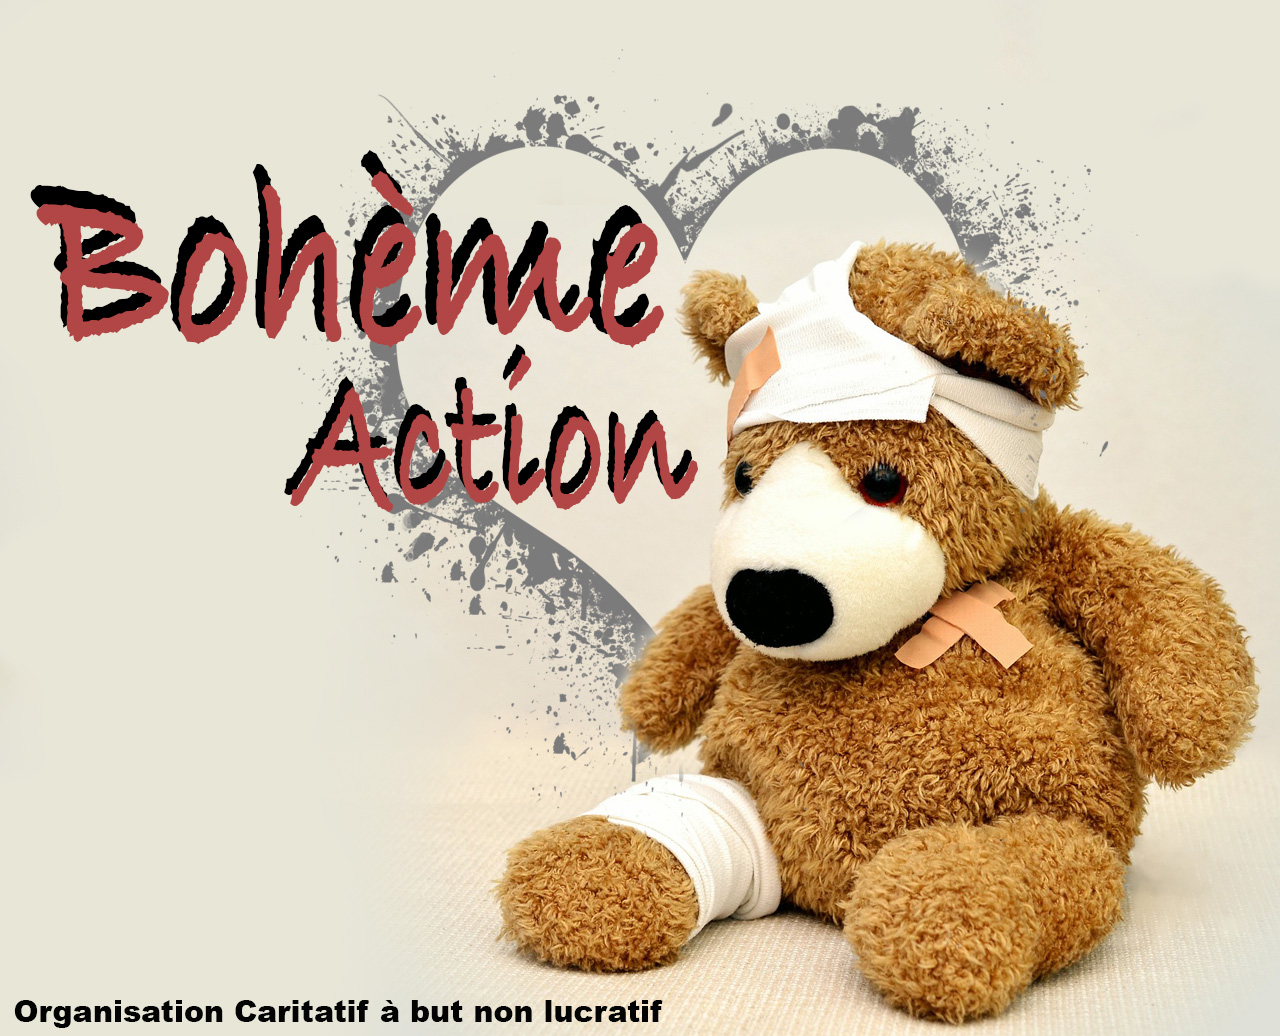 Association Bohème Action